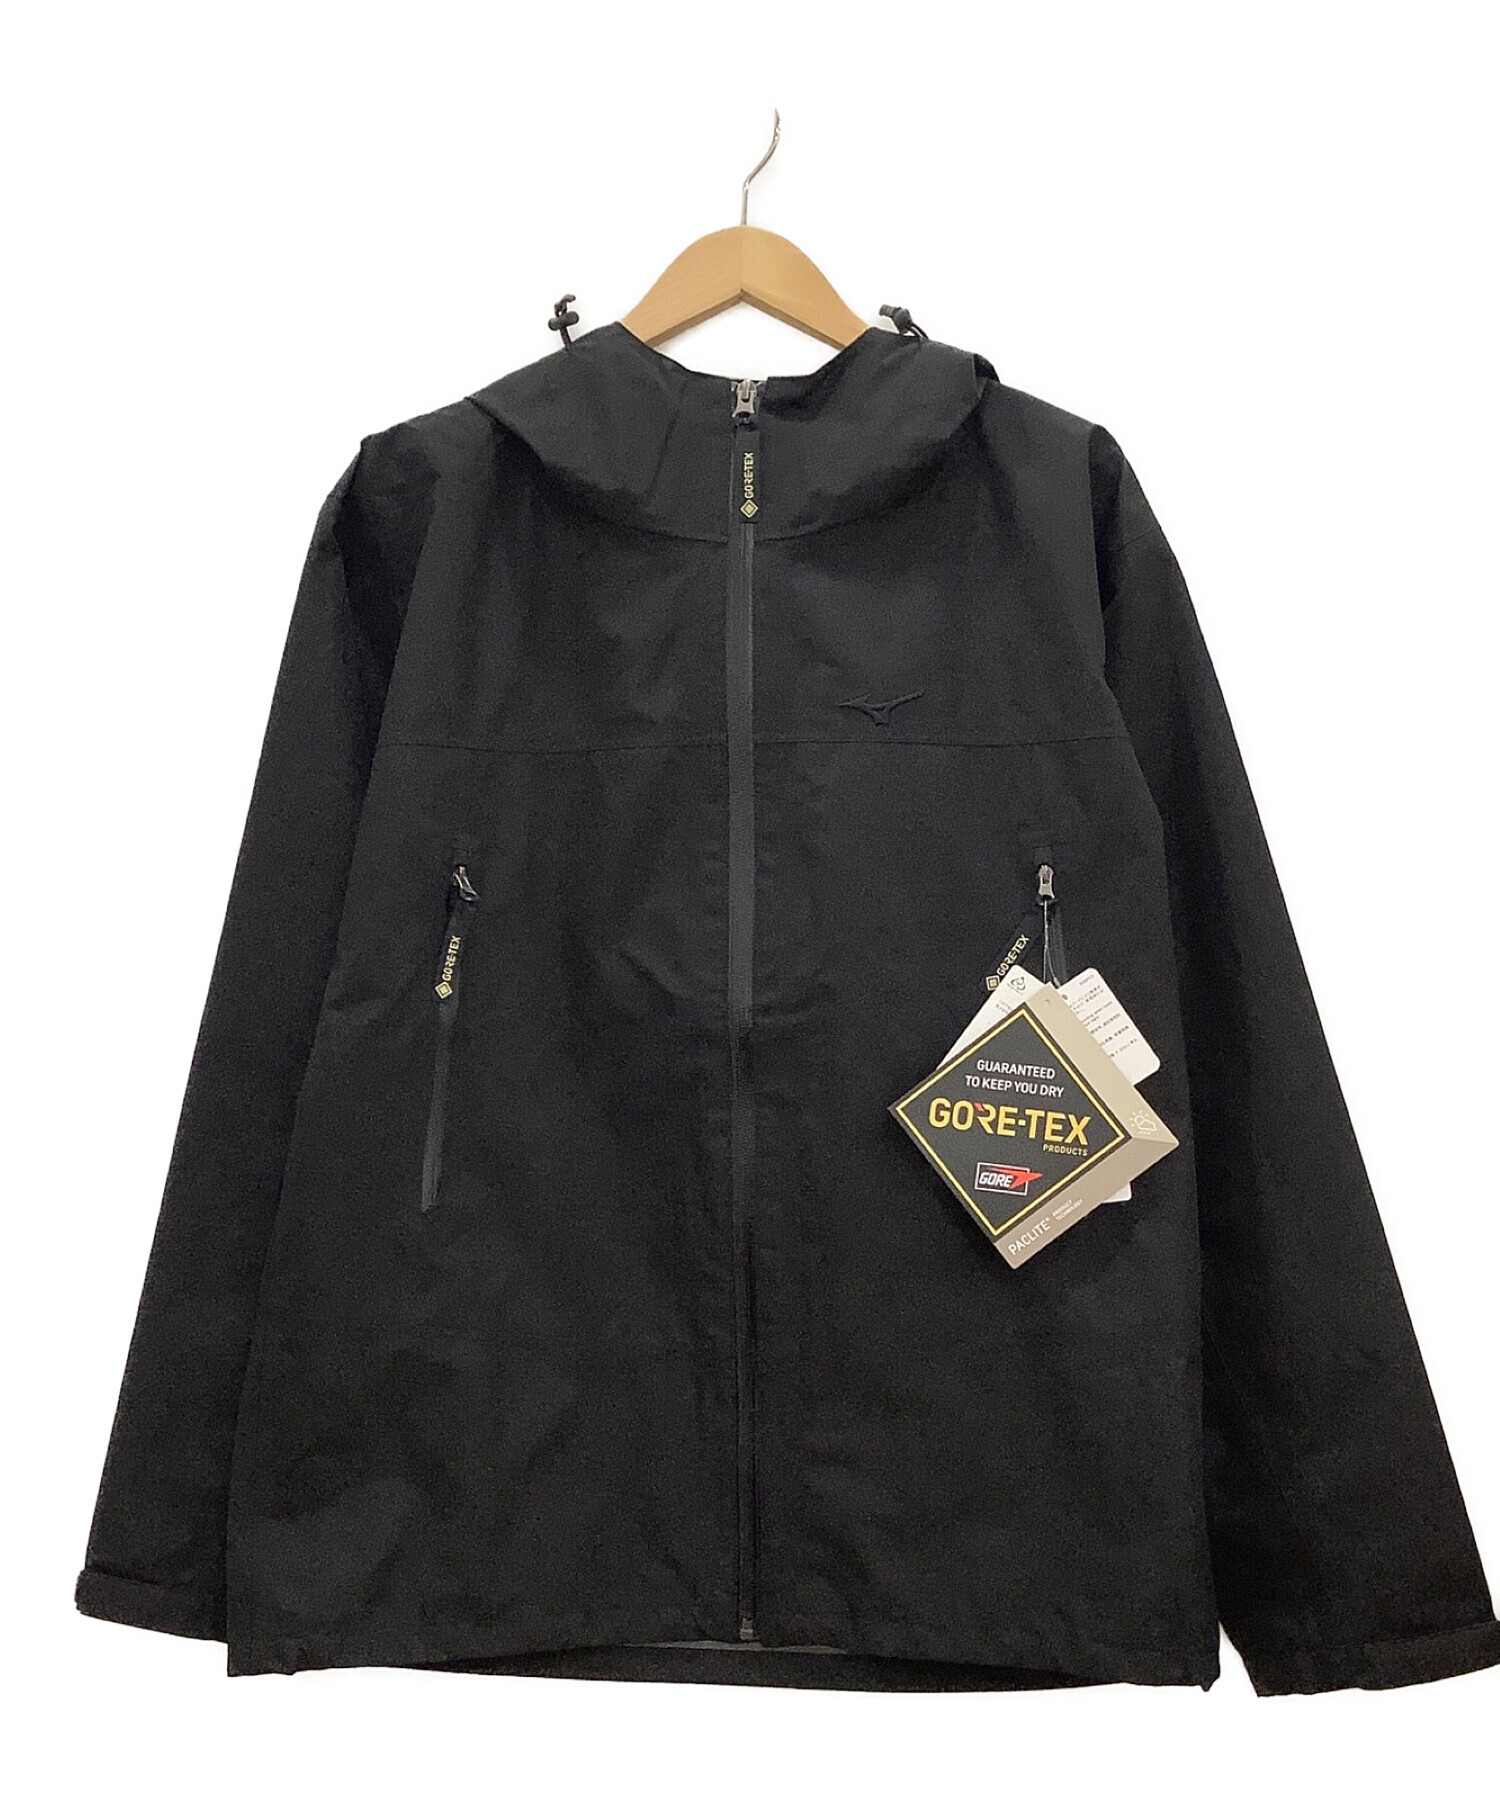 MIZUNO (ミズノ) レインジャケット GORE-TEX ブラック サイズ:L 未使用品